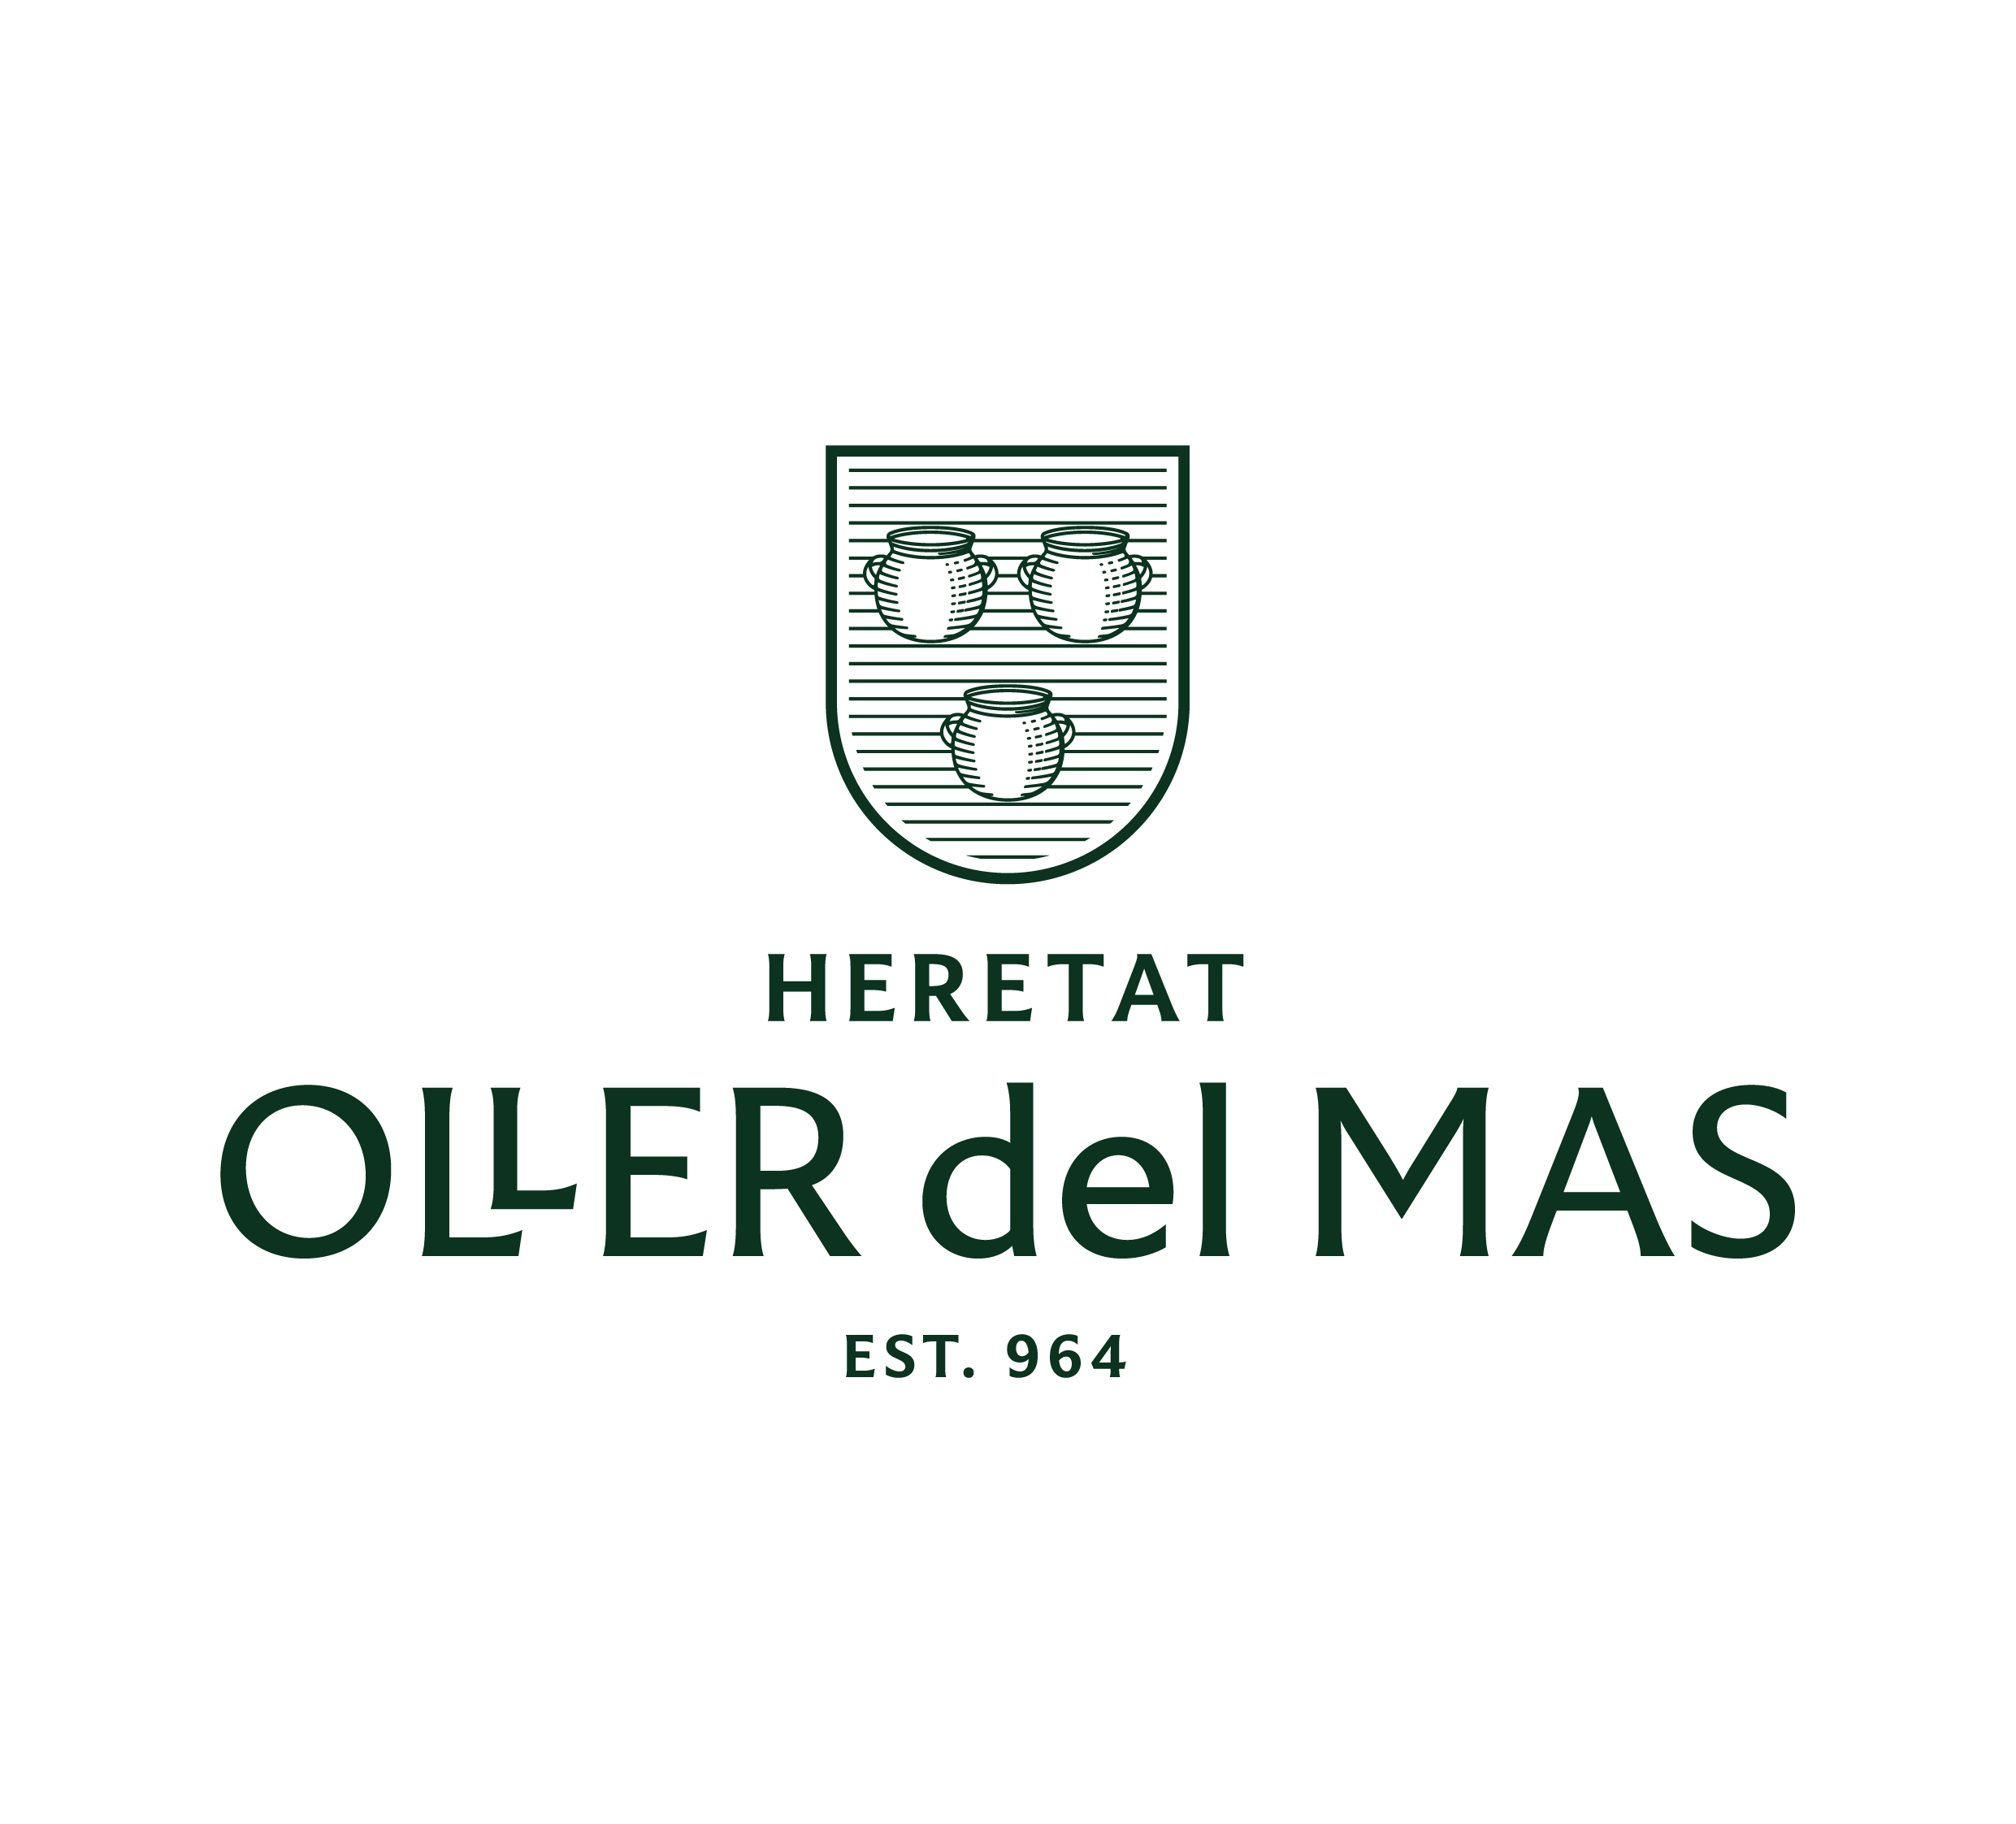 Heretat Oller del Mas - Vins - El Celler del Nou Priorat - Tapes Barcelona - Sants